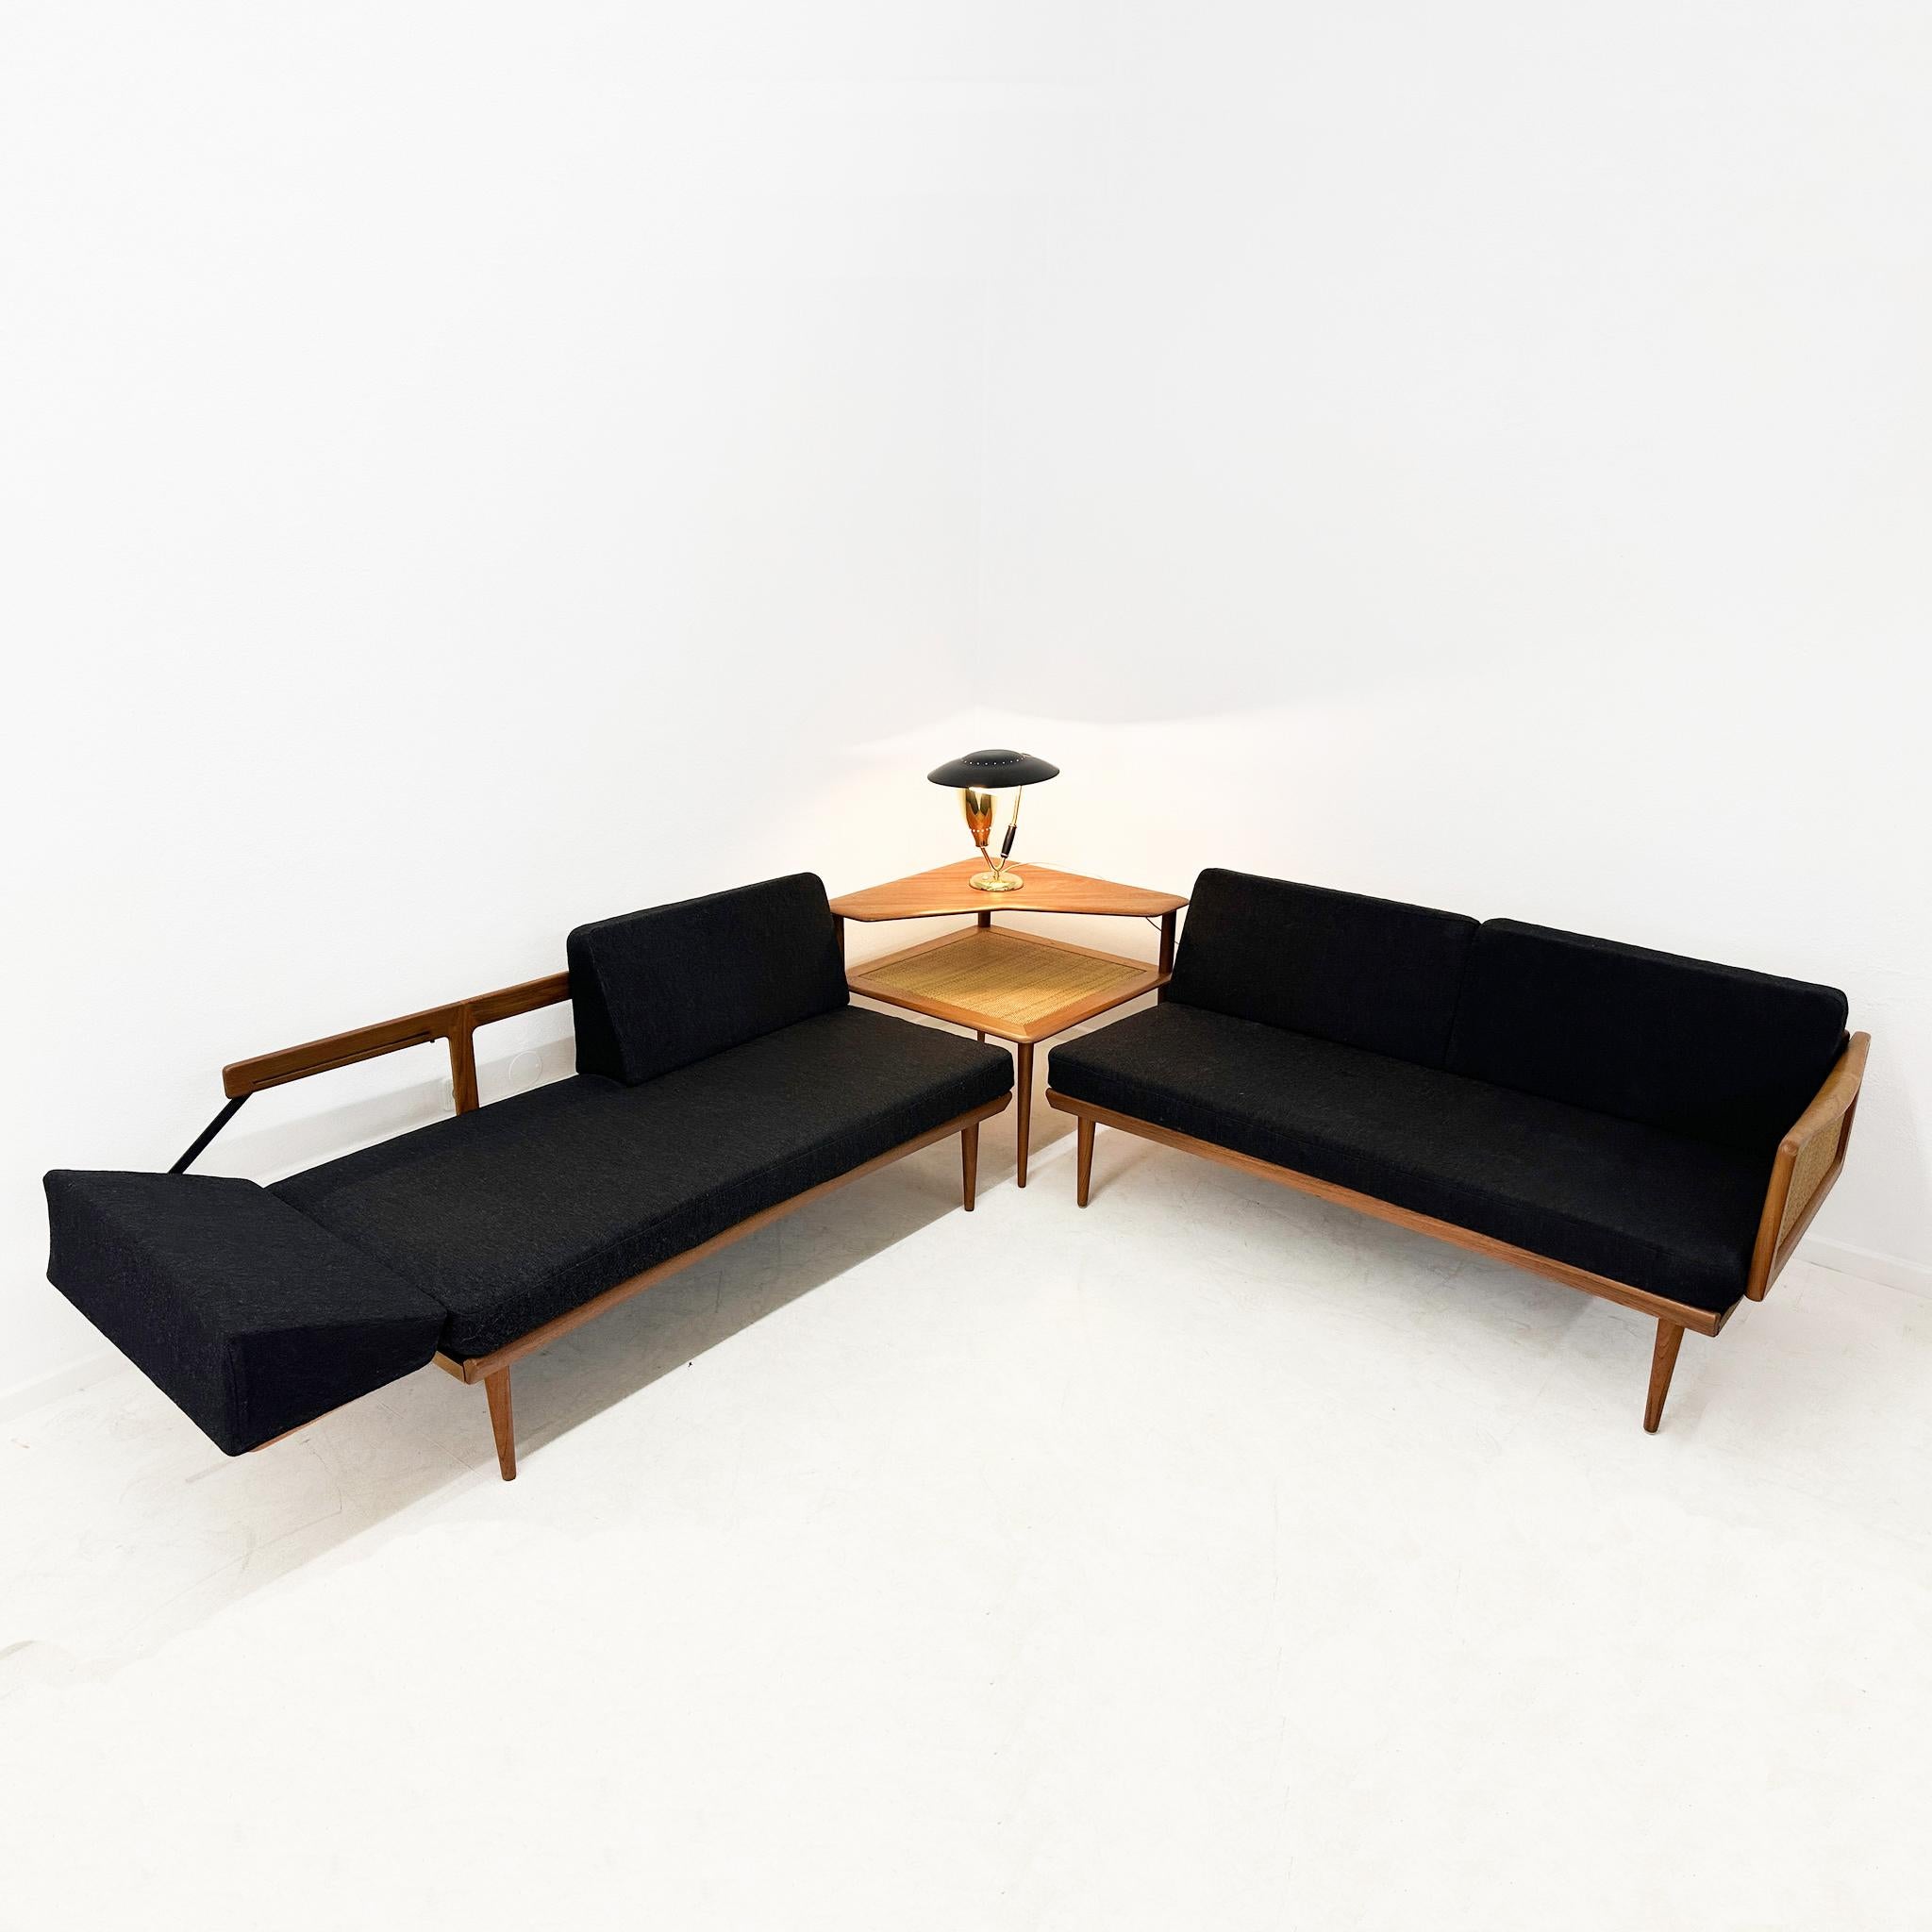 Ensemble de salon modulaire  conçu par les architectes danois Peter Hvidt & Orla Mølgaard Nielsen. Il a été produit au Danemark par France & Daverkosen dans les années 1950. L'ensemble comprend deux canapés modulaires 2 places et une table basse